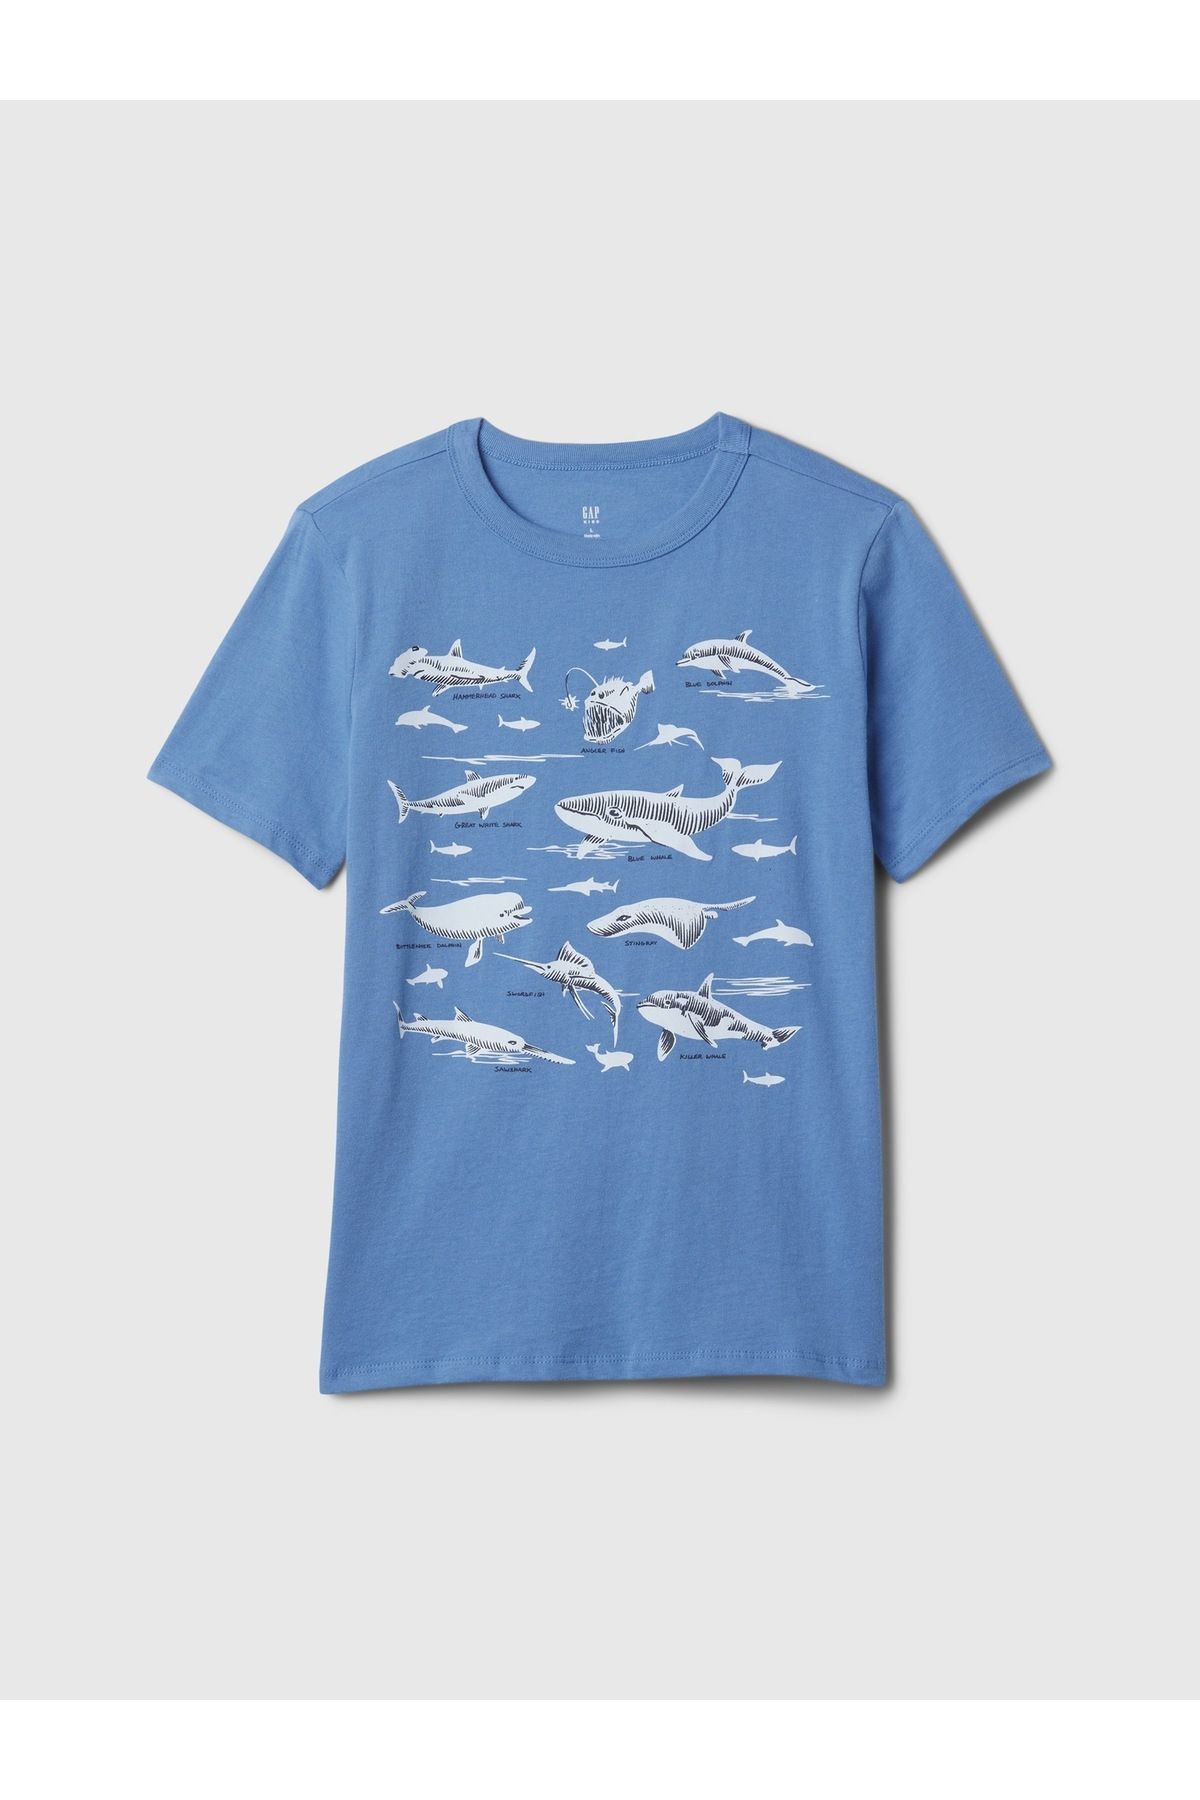 GAP Erkek Çocuk Mavi Grafikli T-Shirt